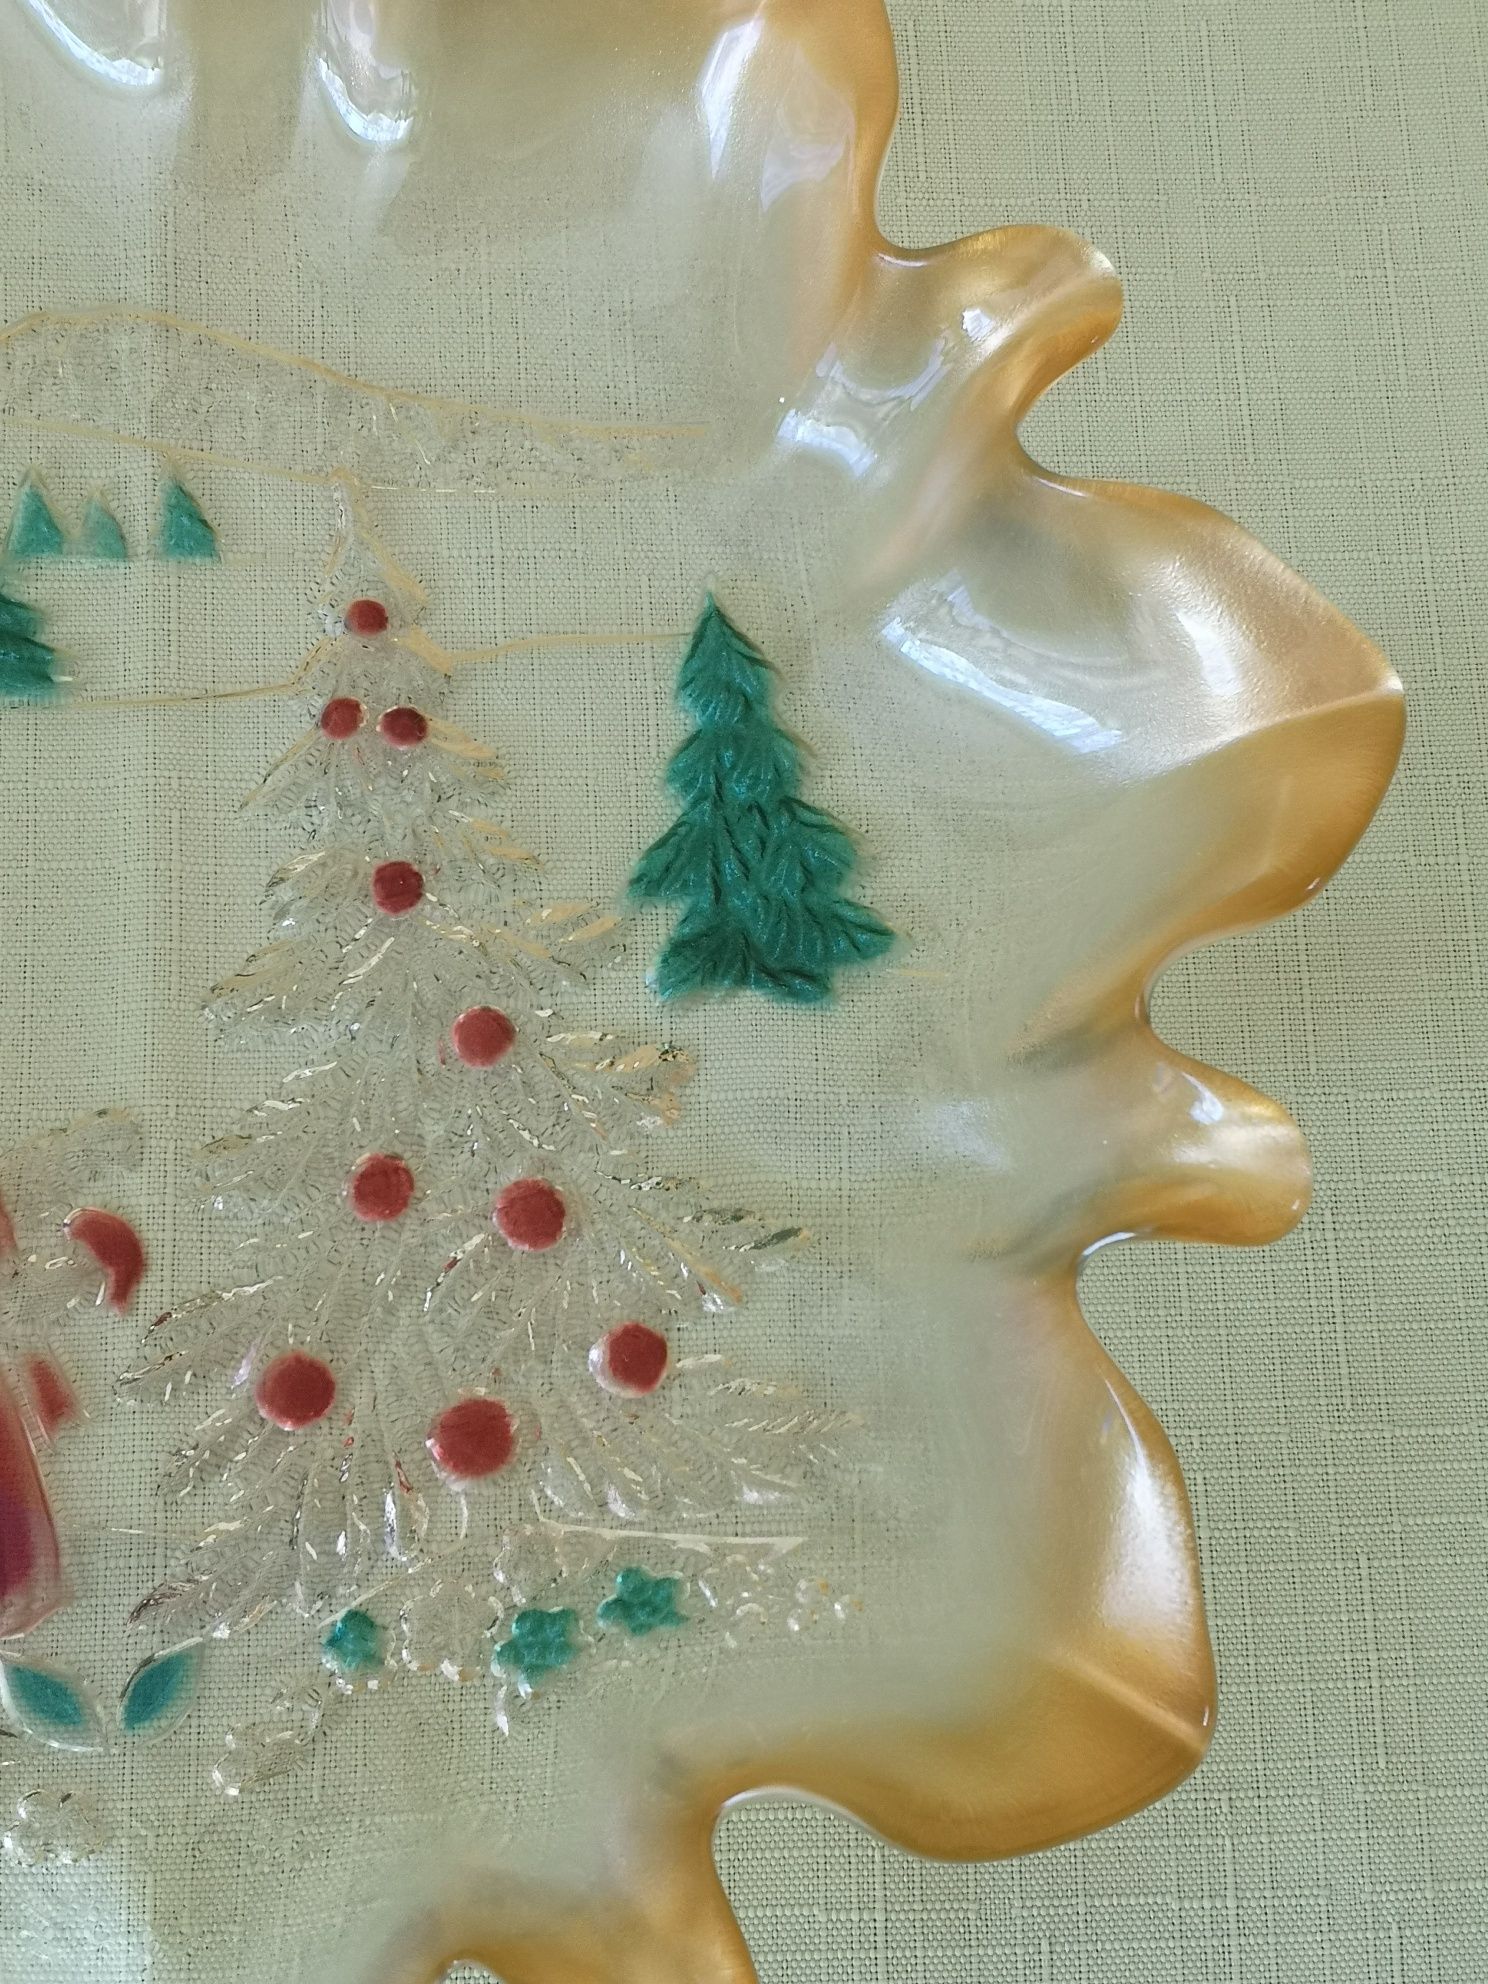 Kolorowe szklo patera talerz świąteczny wykonanie ręczne